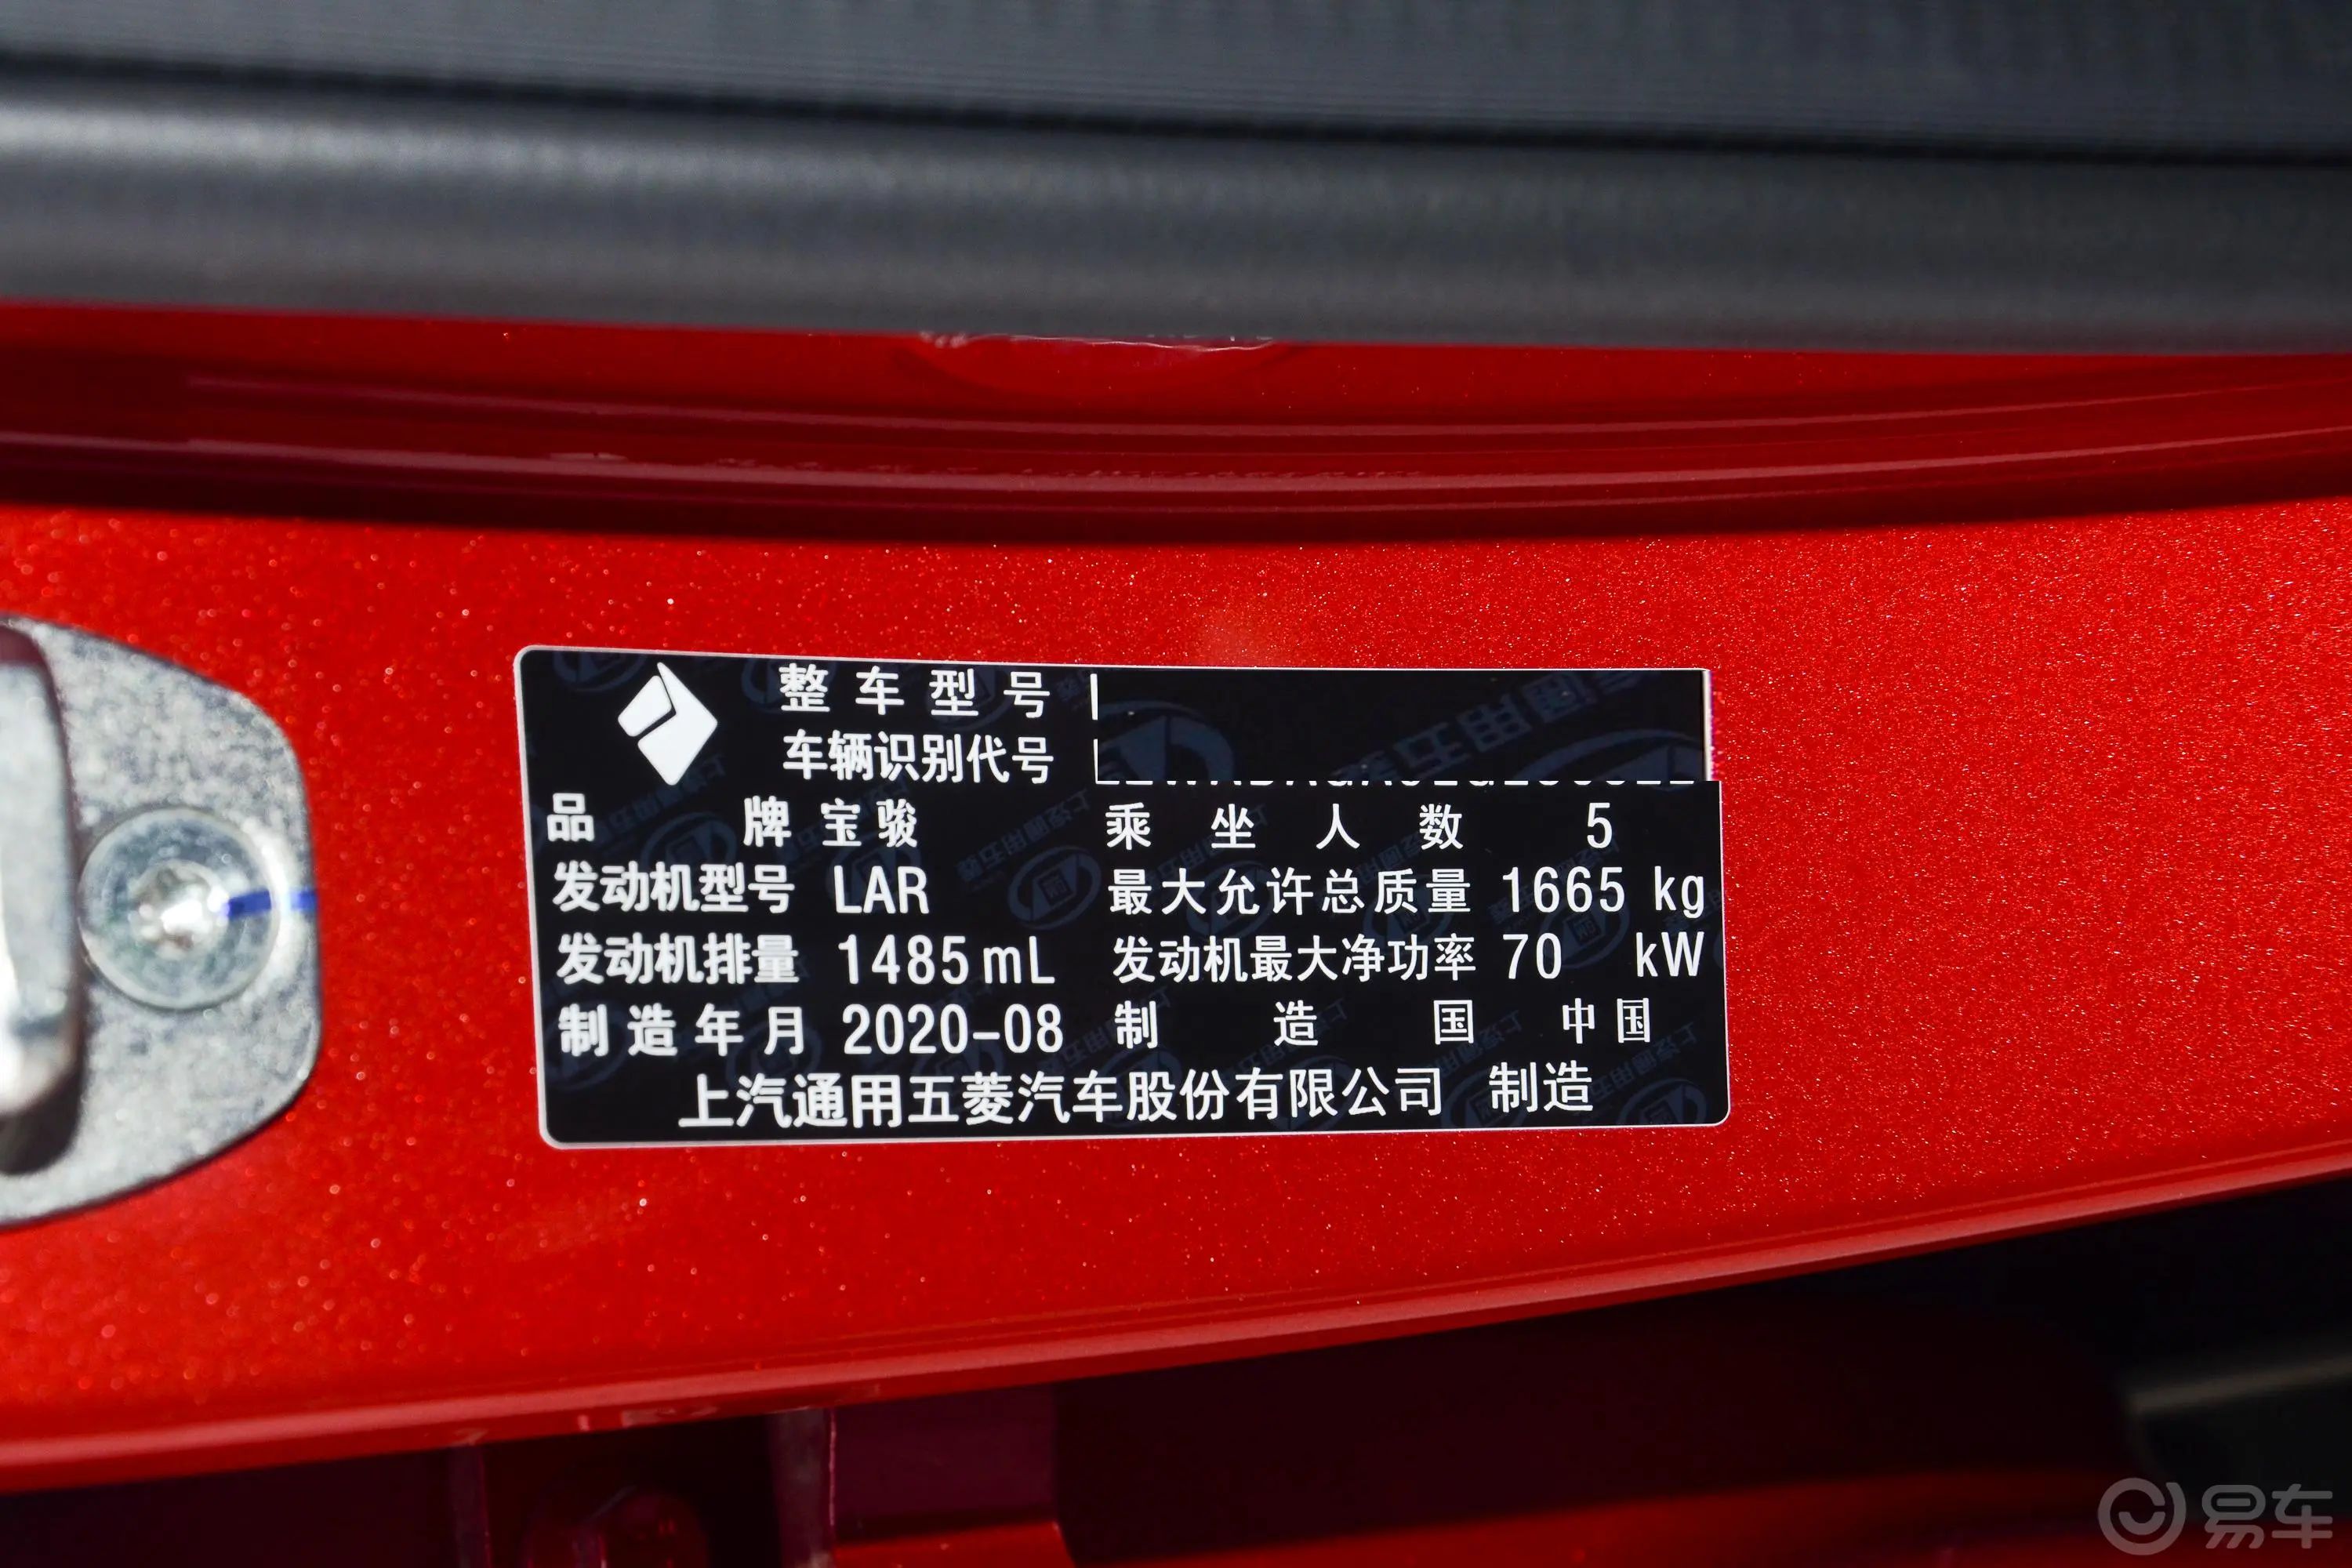 宝骏RS-31.5L 手动 智能舒适型车辆信息铭牌